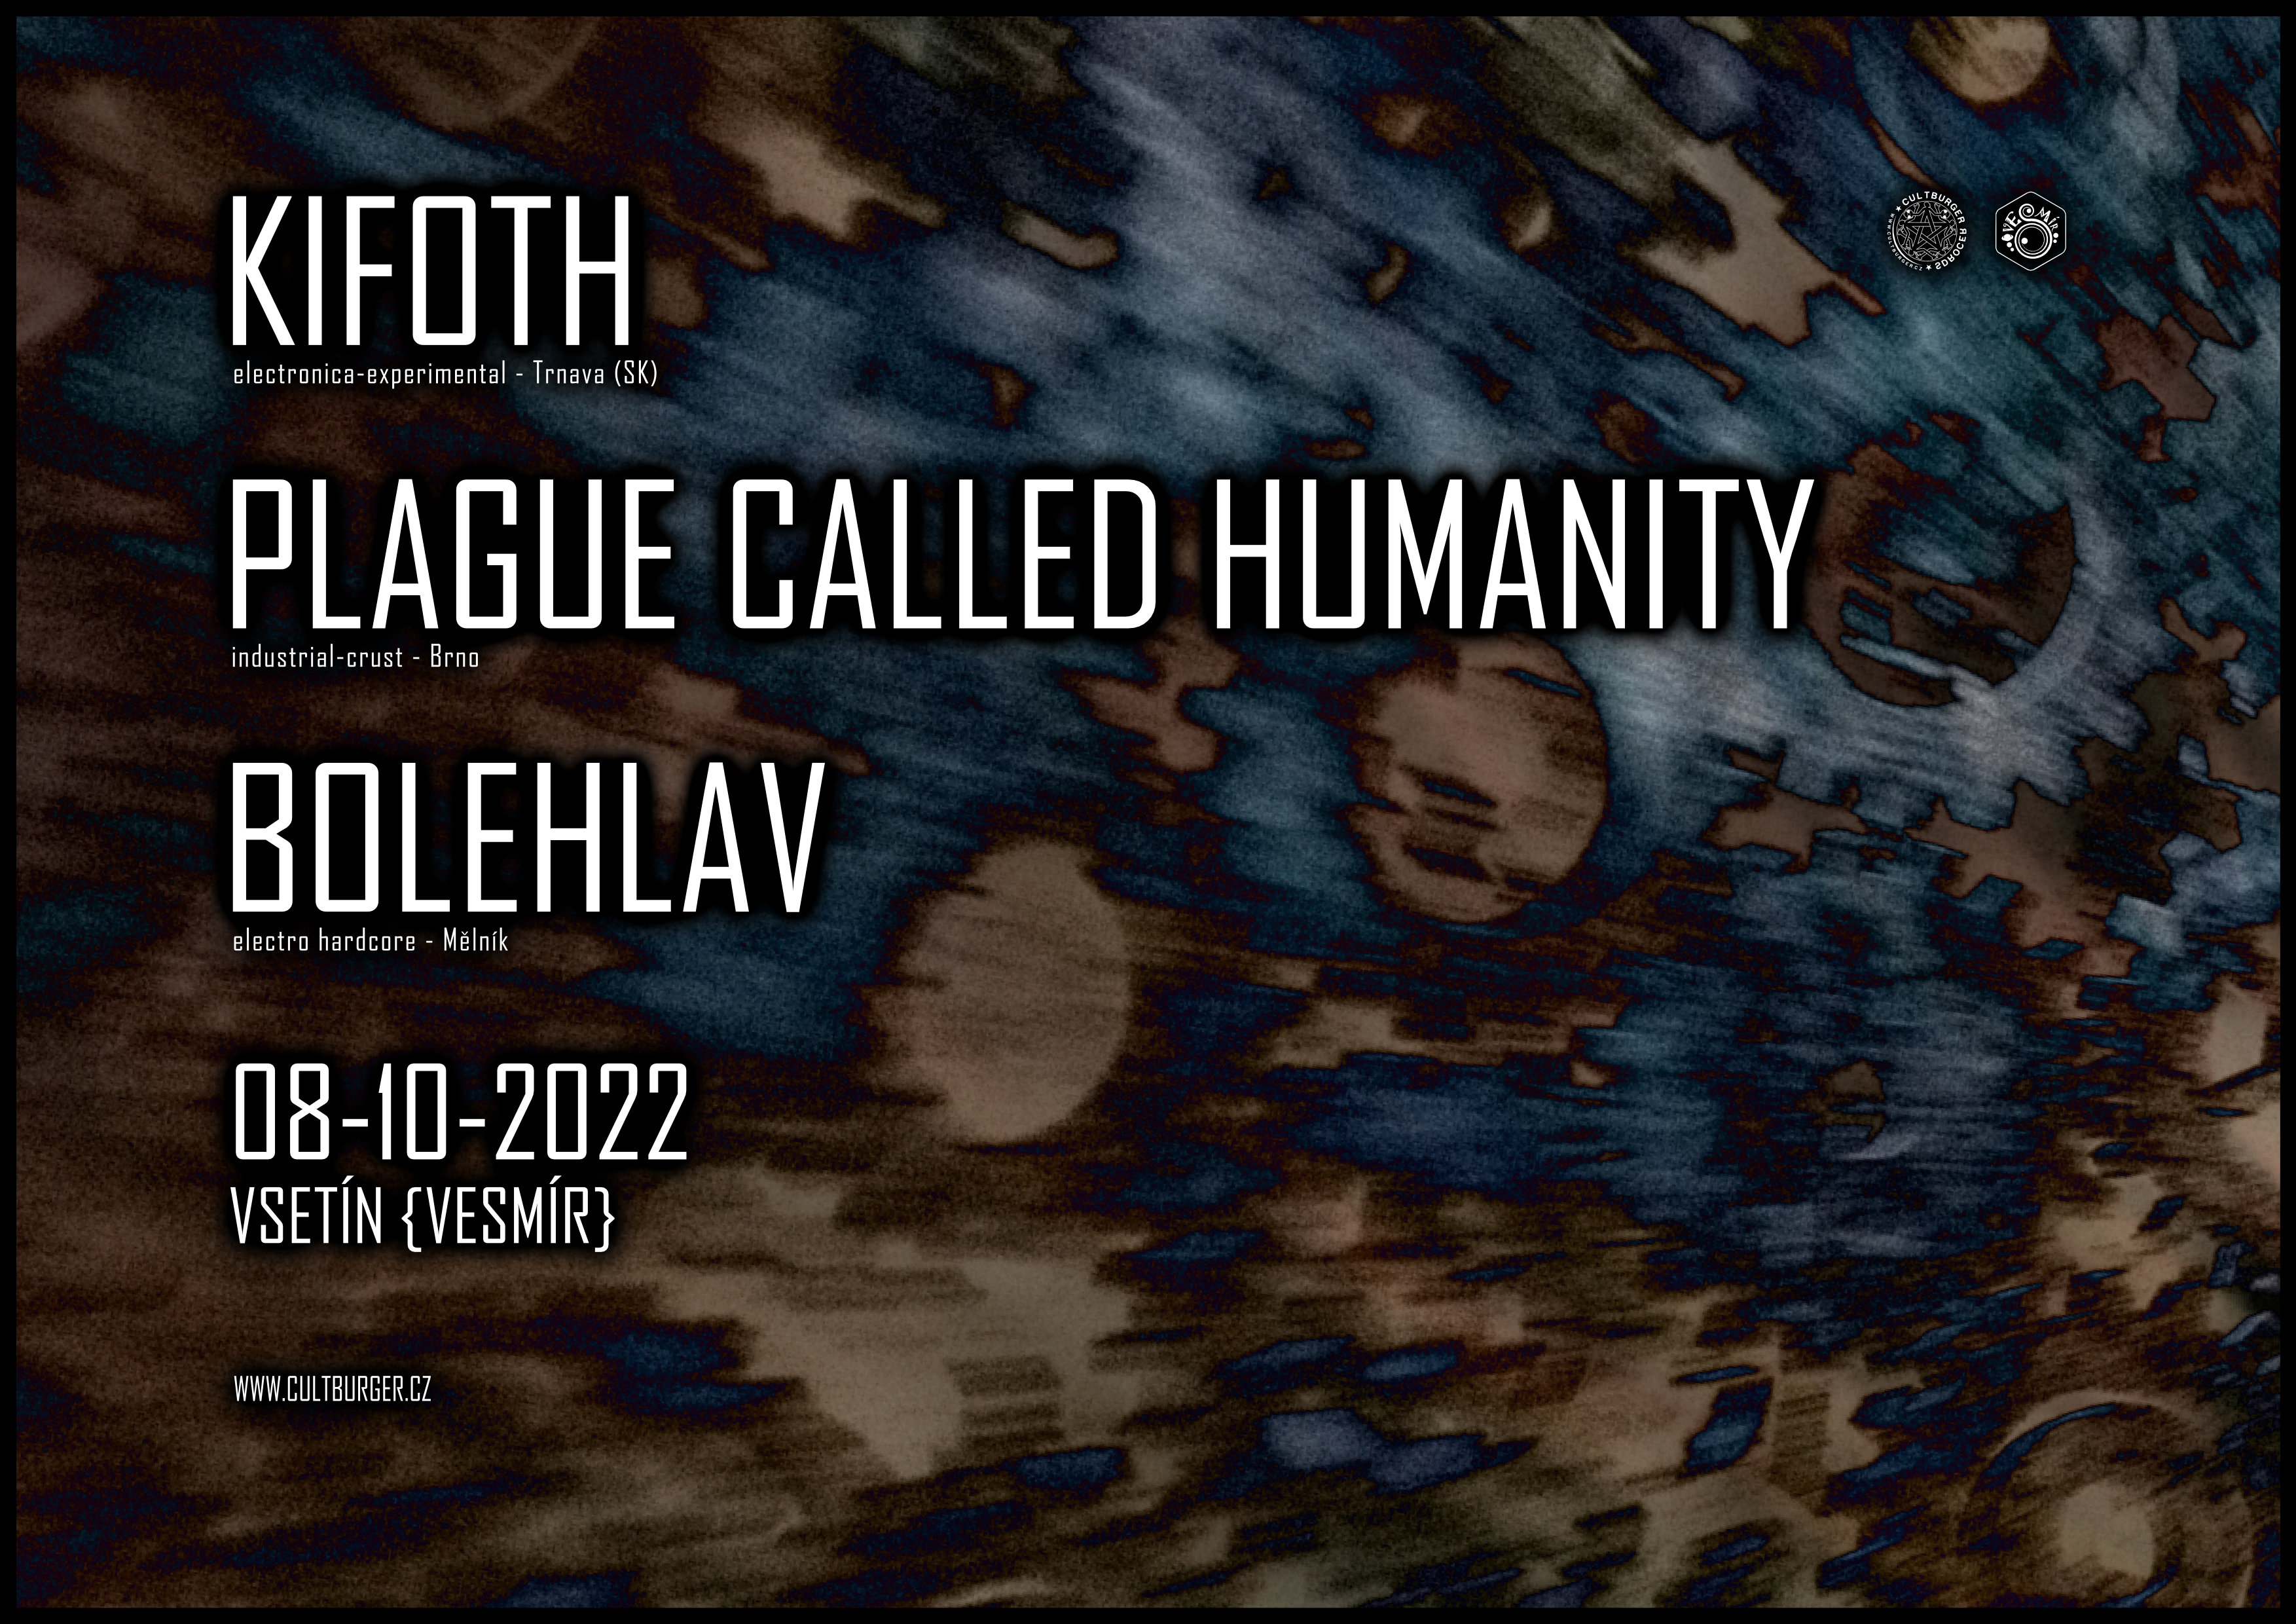 Obrázek události Kifoth (SK), Plague Called Humanity (CZ), Bolehlav (CZ)